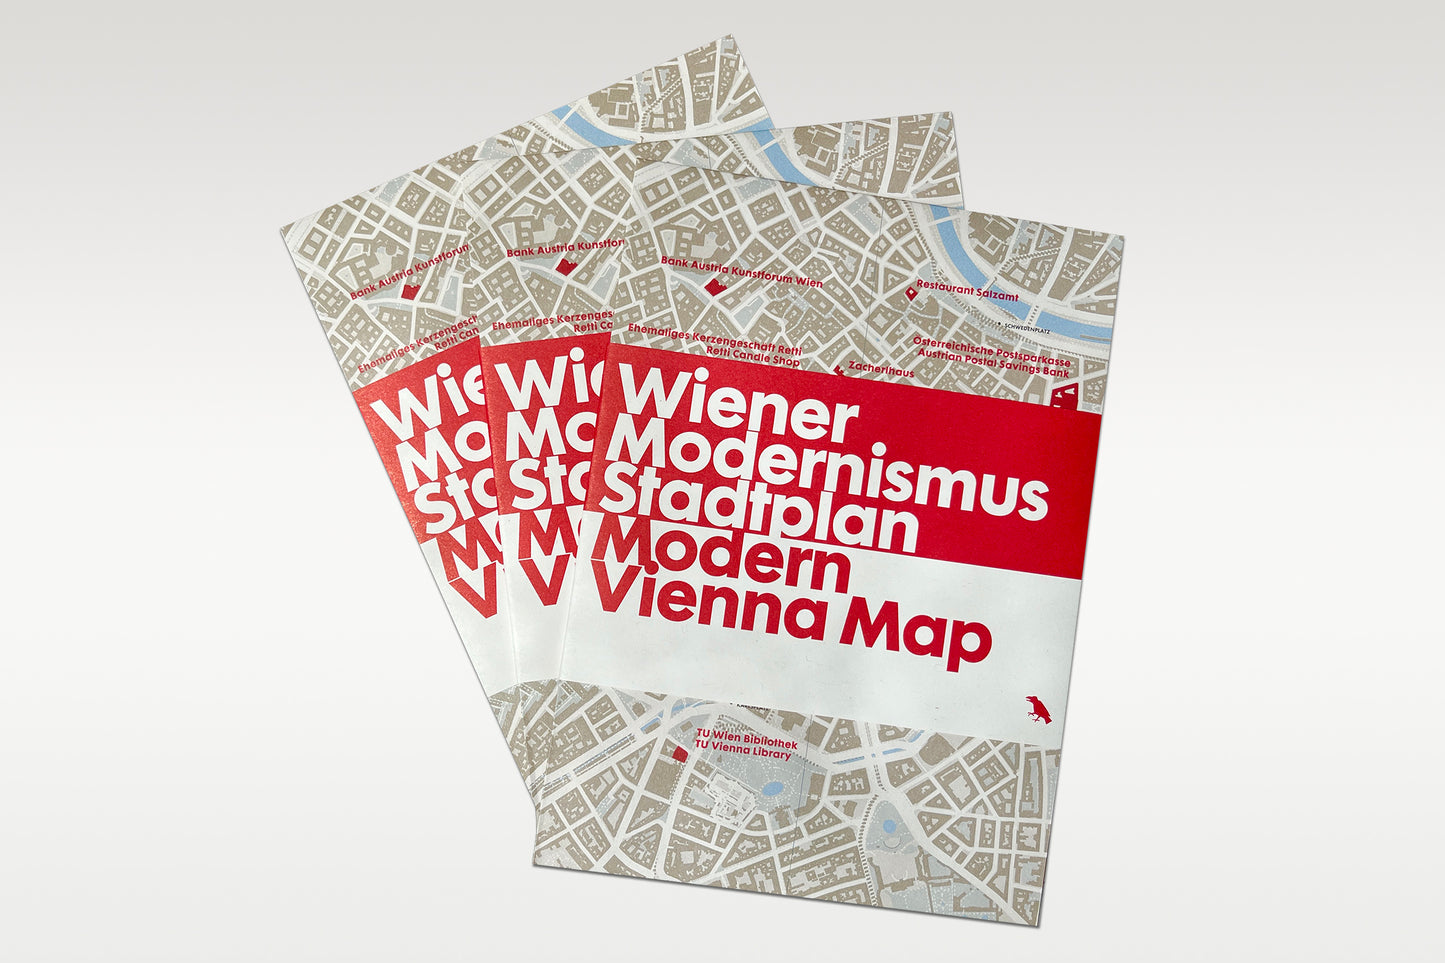 Modern Vienna Map / Wiener Modernismus Stadtplan